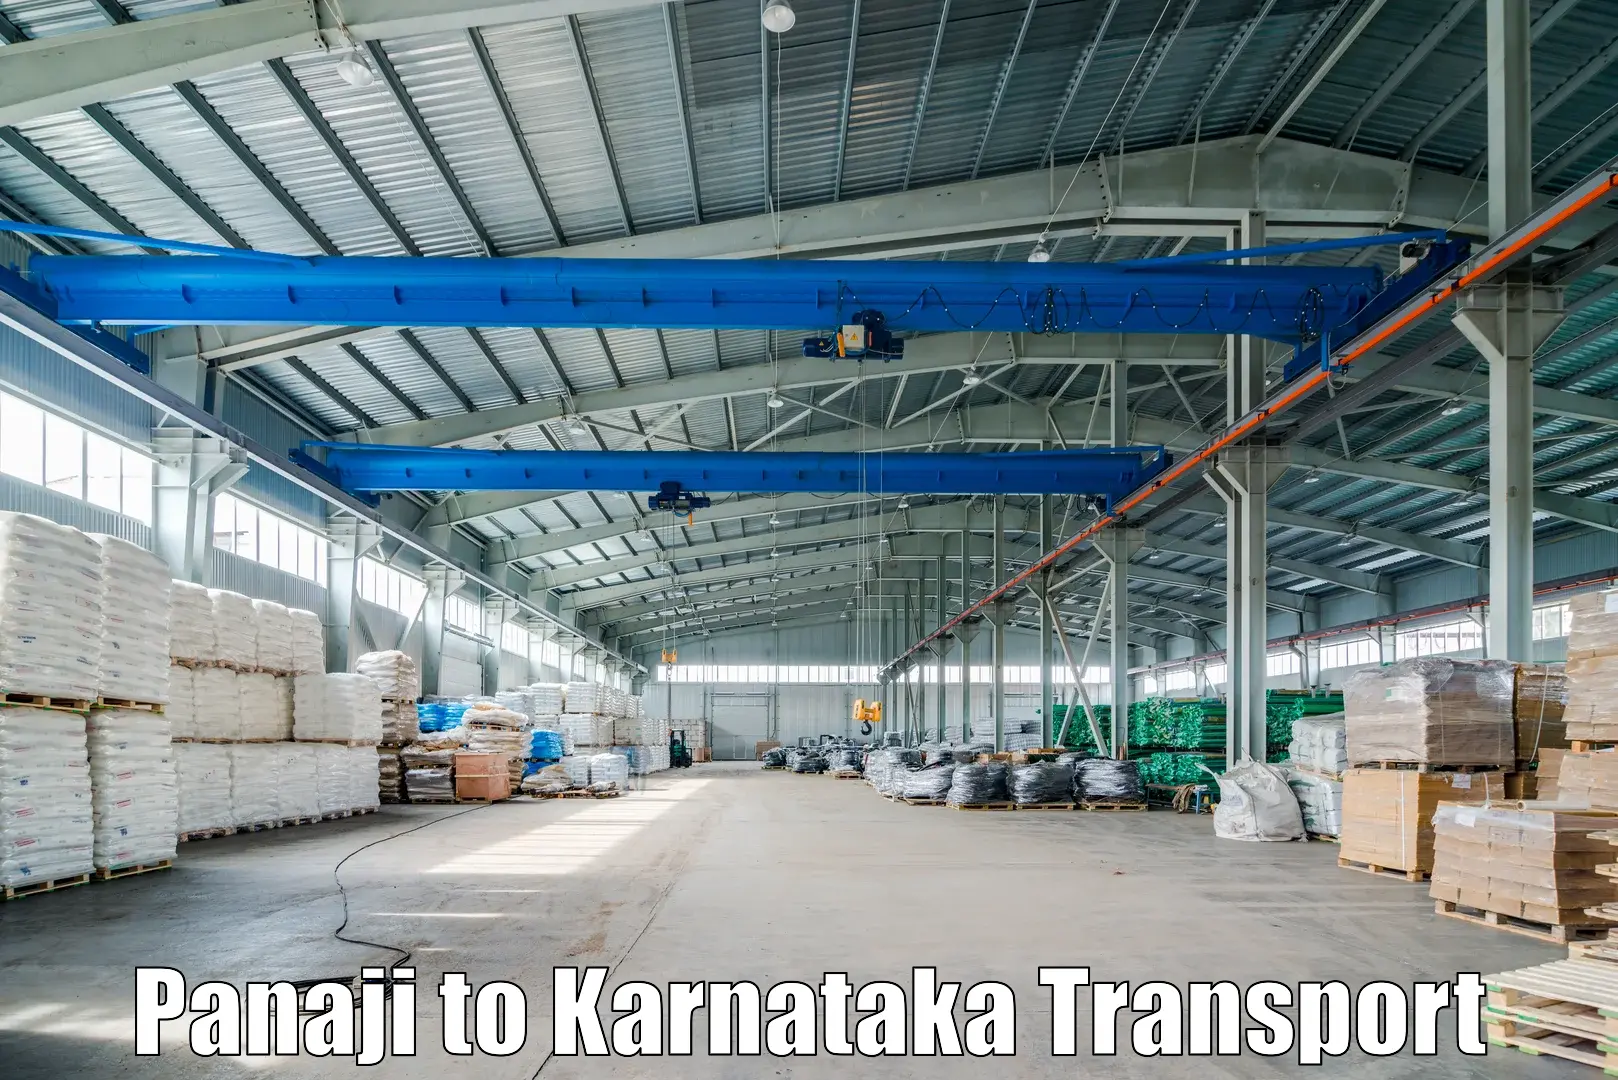 Transport in sharing Panaji to Bangalore